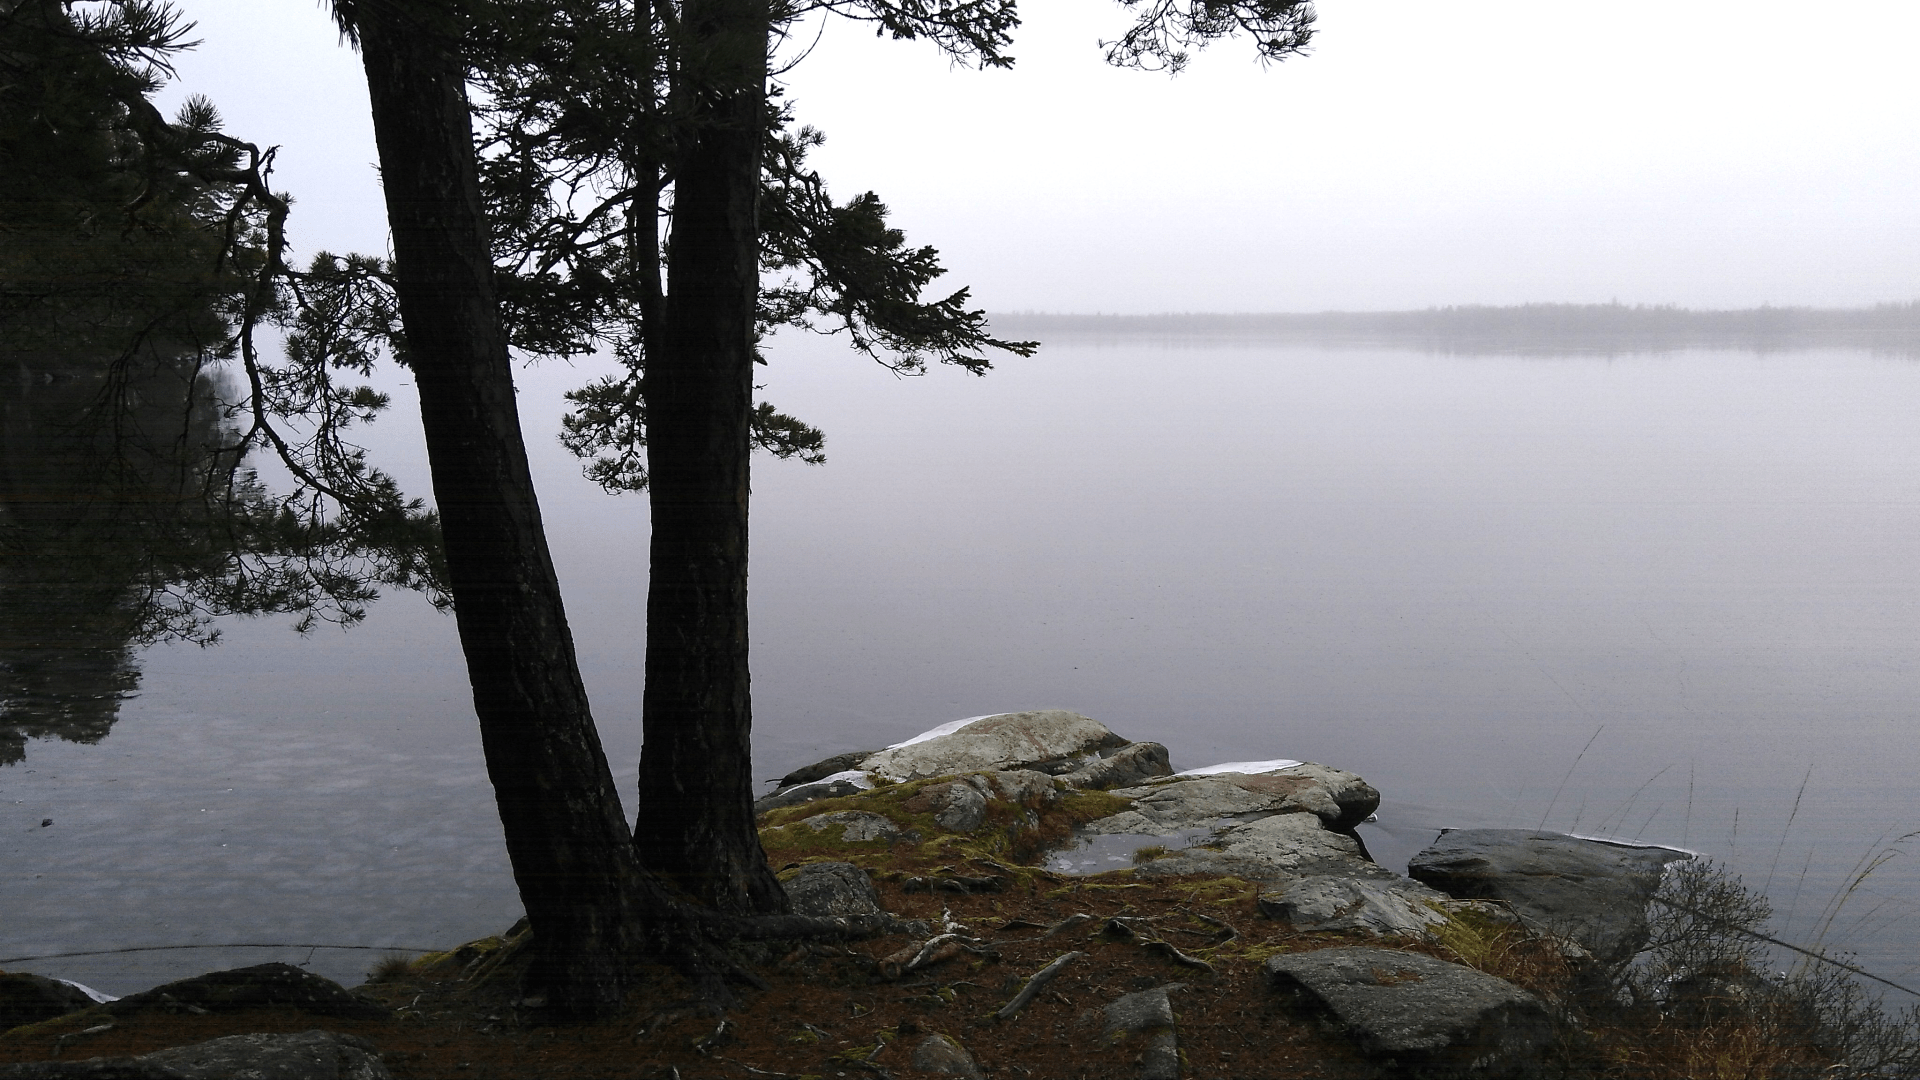 Foggy day at Hissö, Helgasjön, Växjö